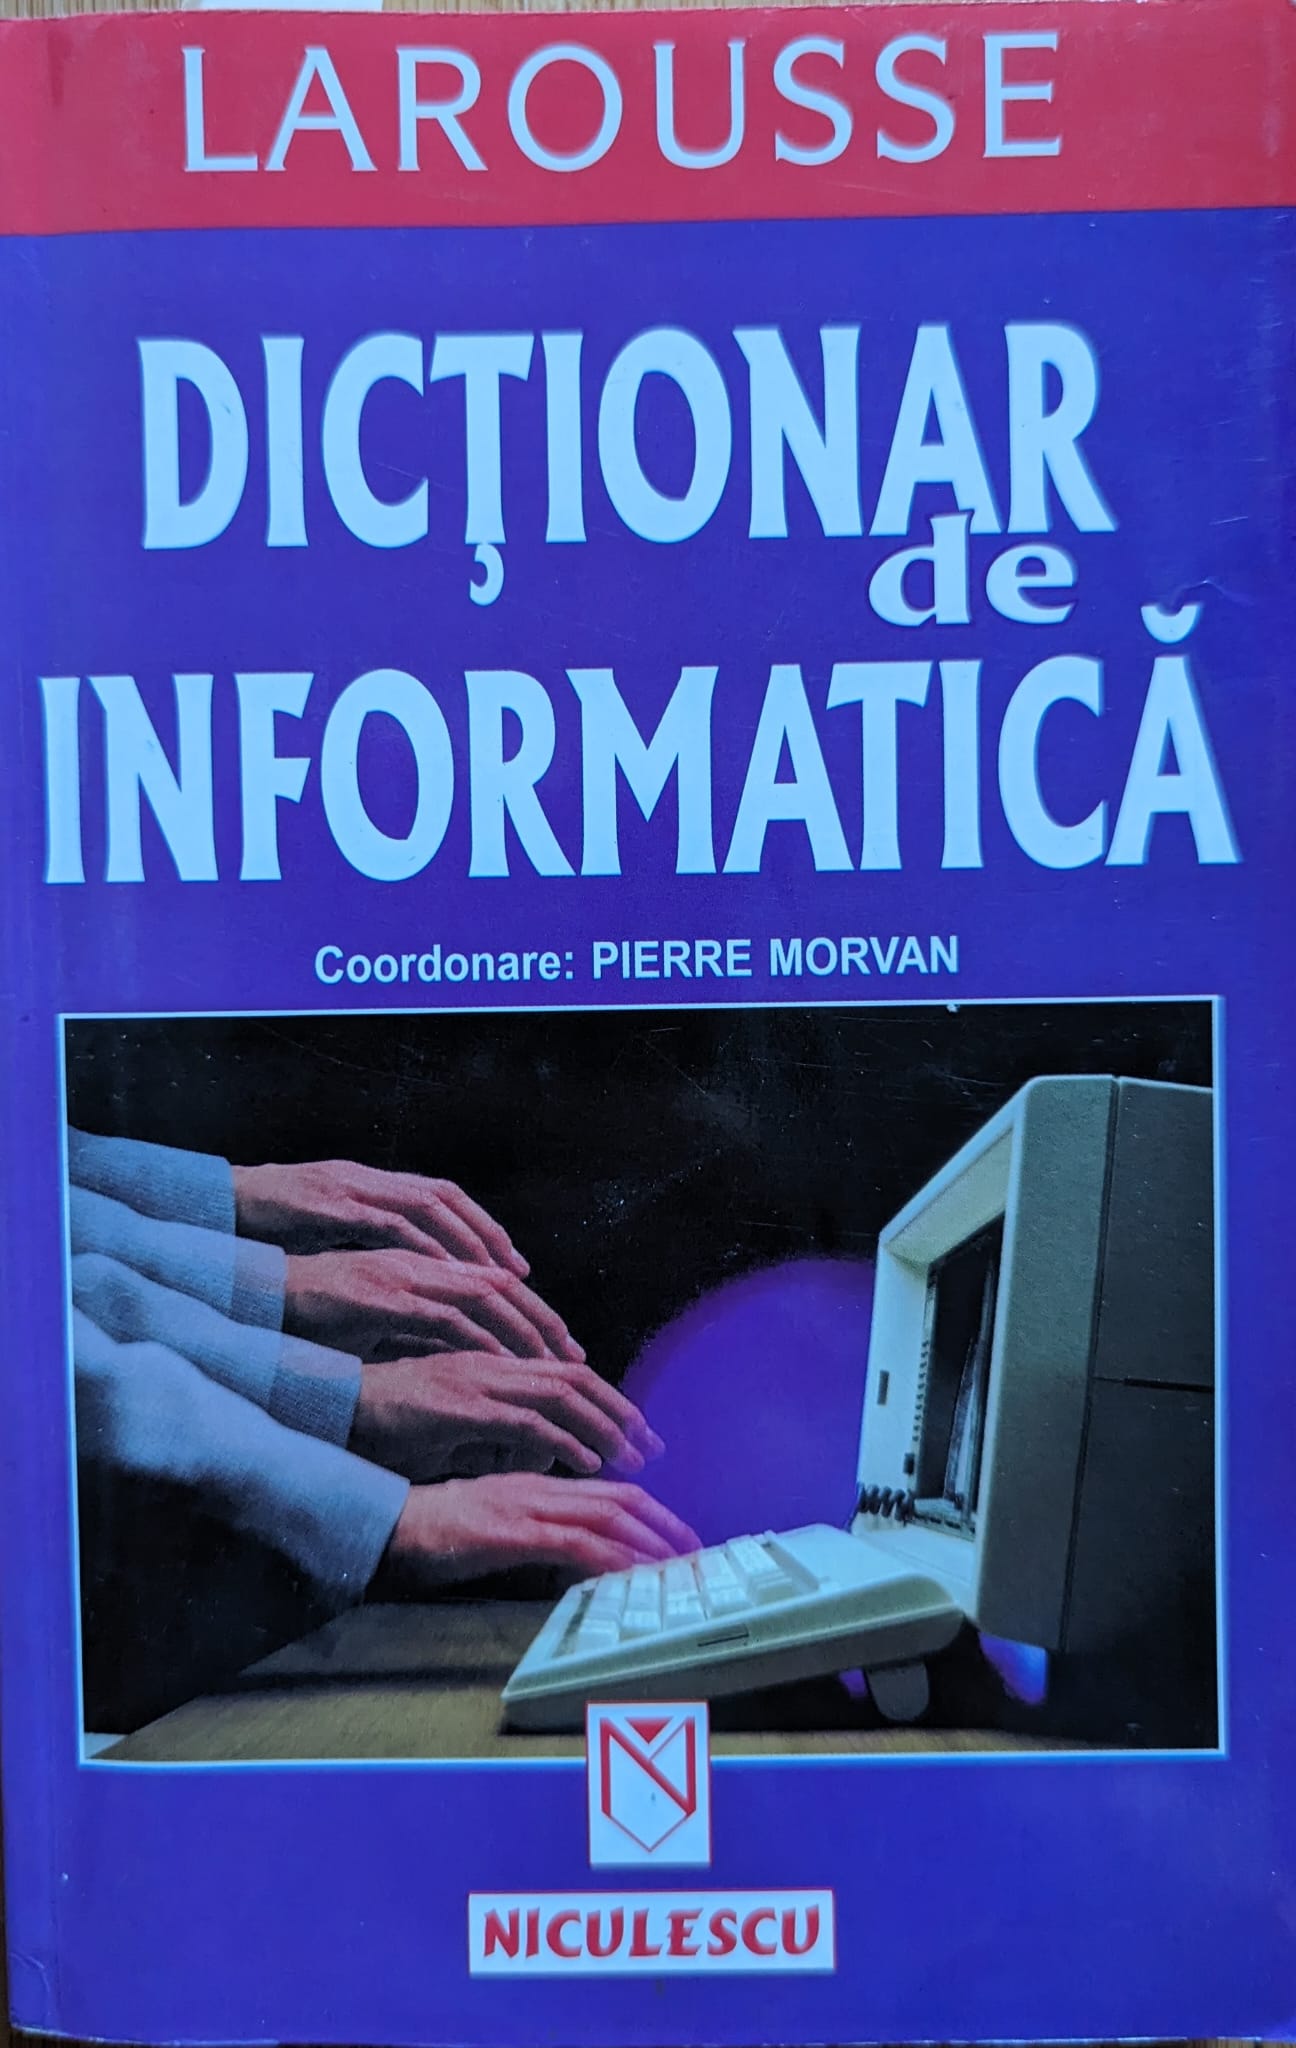 dictionar de informatica larousse                                                                    pierre morvan                                                                                       